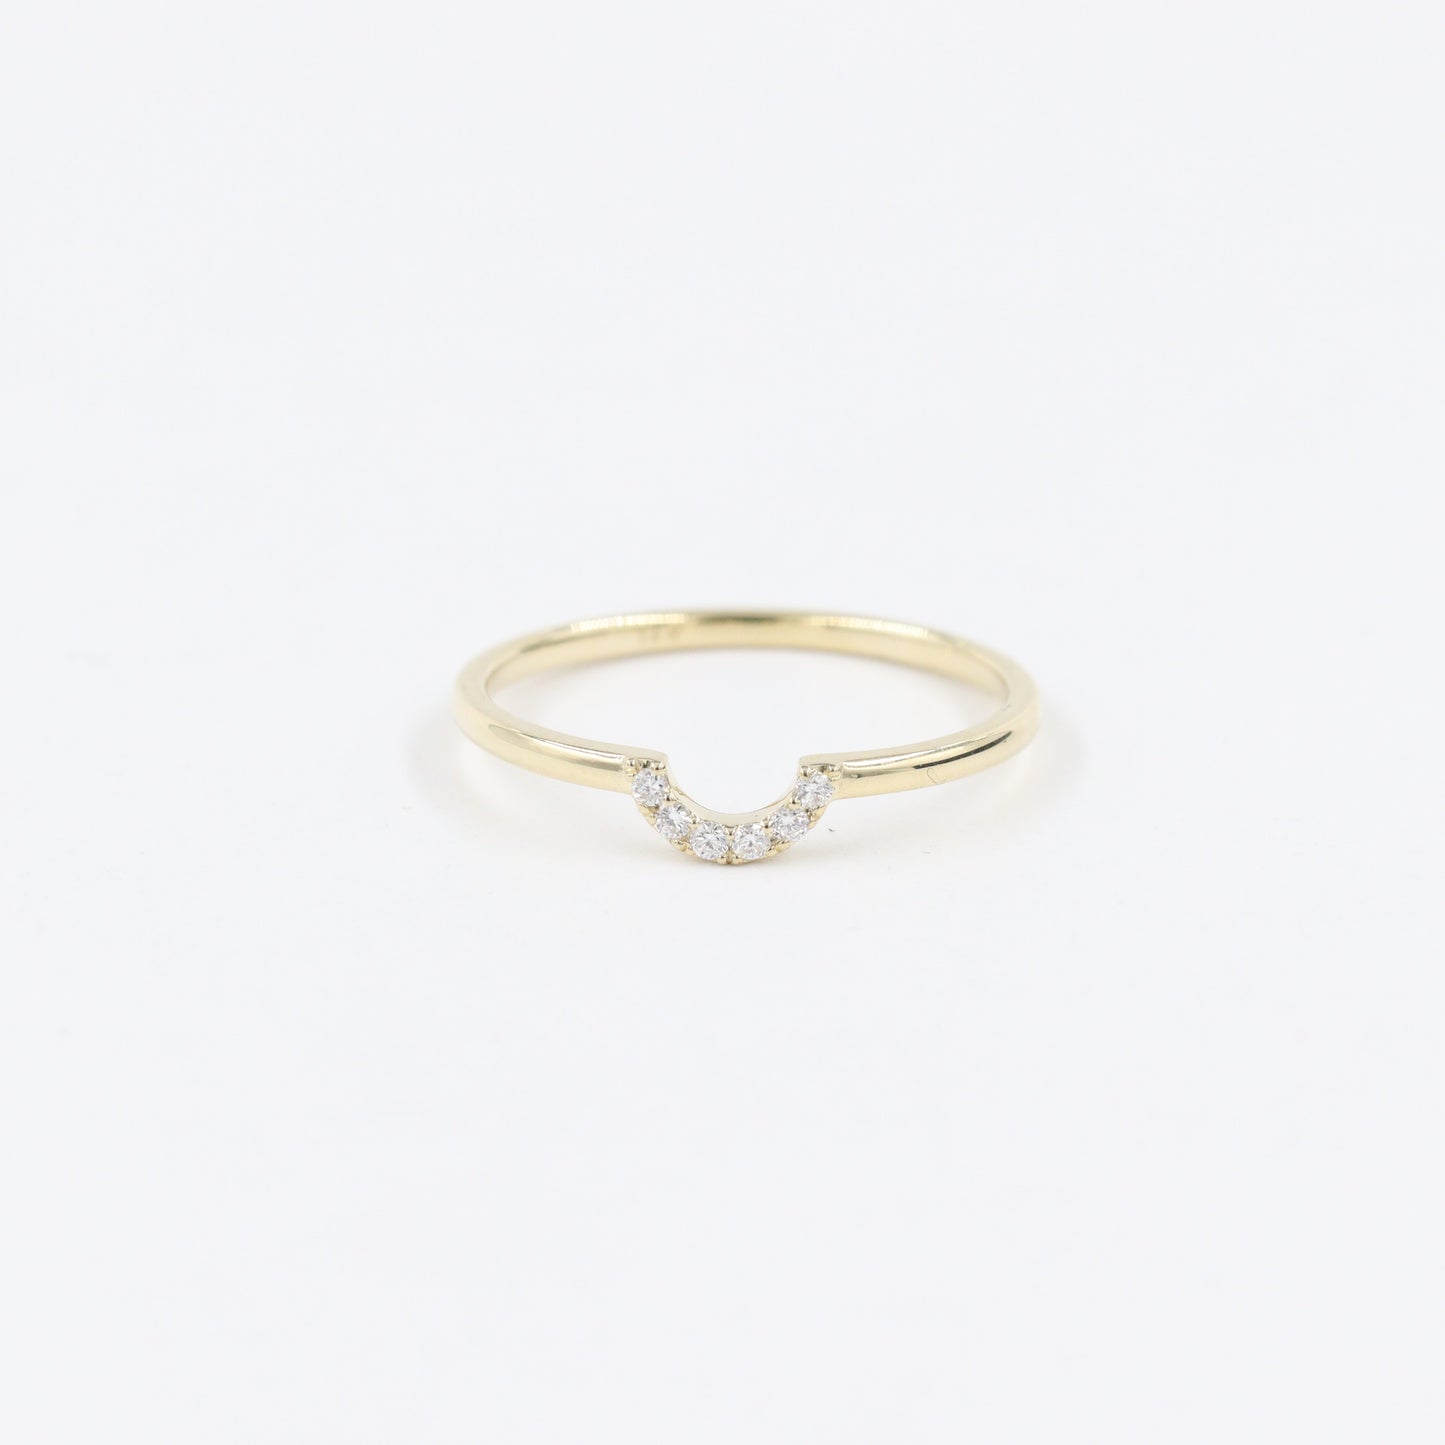 Mini U-shape Diamond Pave Ring / Stackable Ring